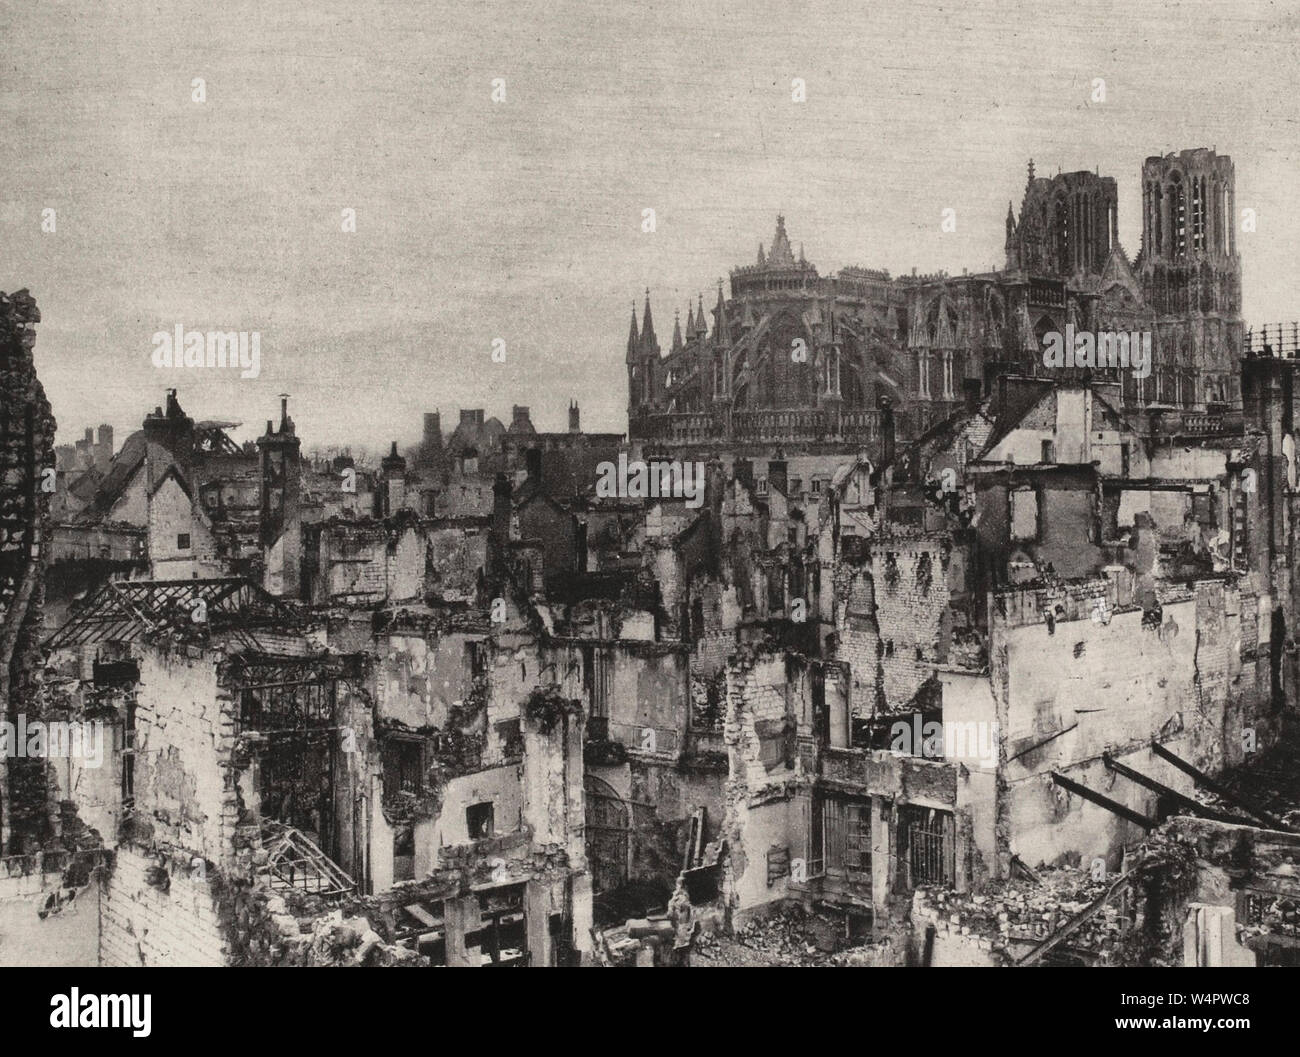 La città di Reims e la sua famosa cattedrale in un immagine non datate dalla prima guerra mondiale, probabilmente preso entro la fine del 1916. La cattedrale è stata deliberatamente bombardato da forze tedesche, un atto che potrebbe qualificarsi come un crimine di guerra (ma non nel 1916). Foto Stock